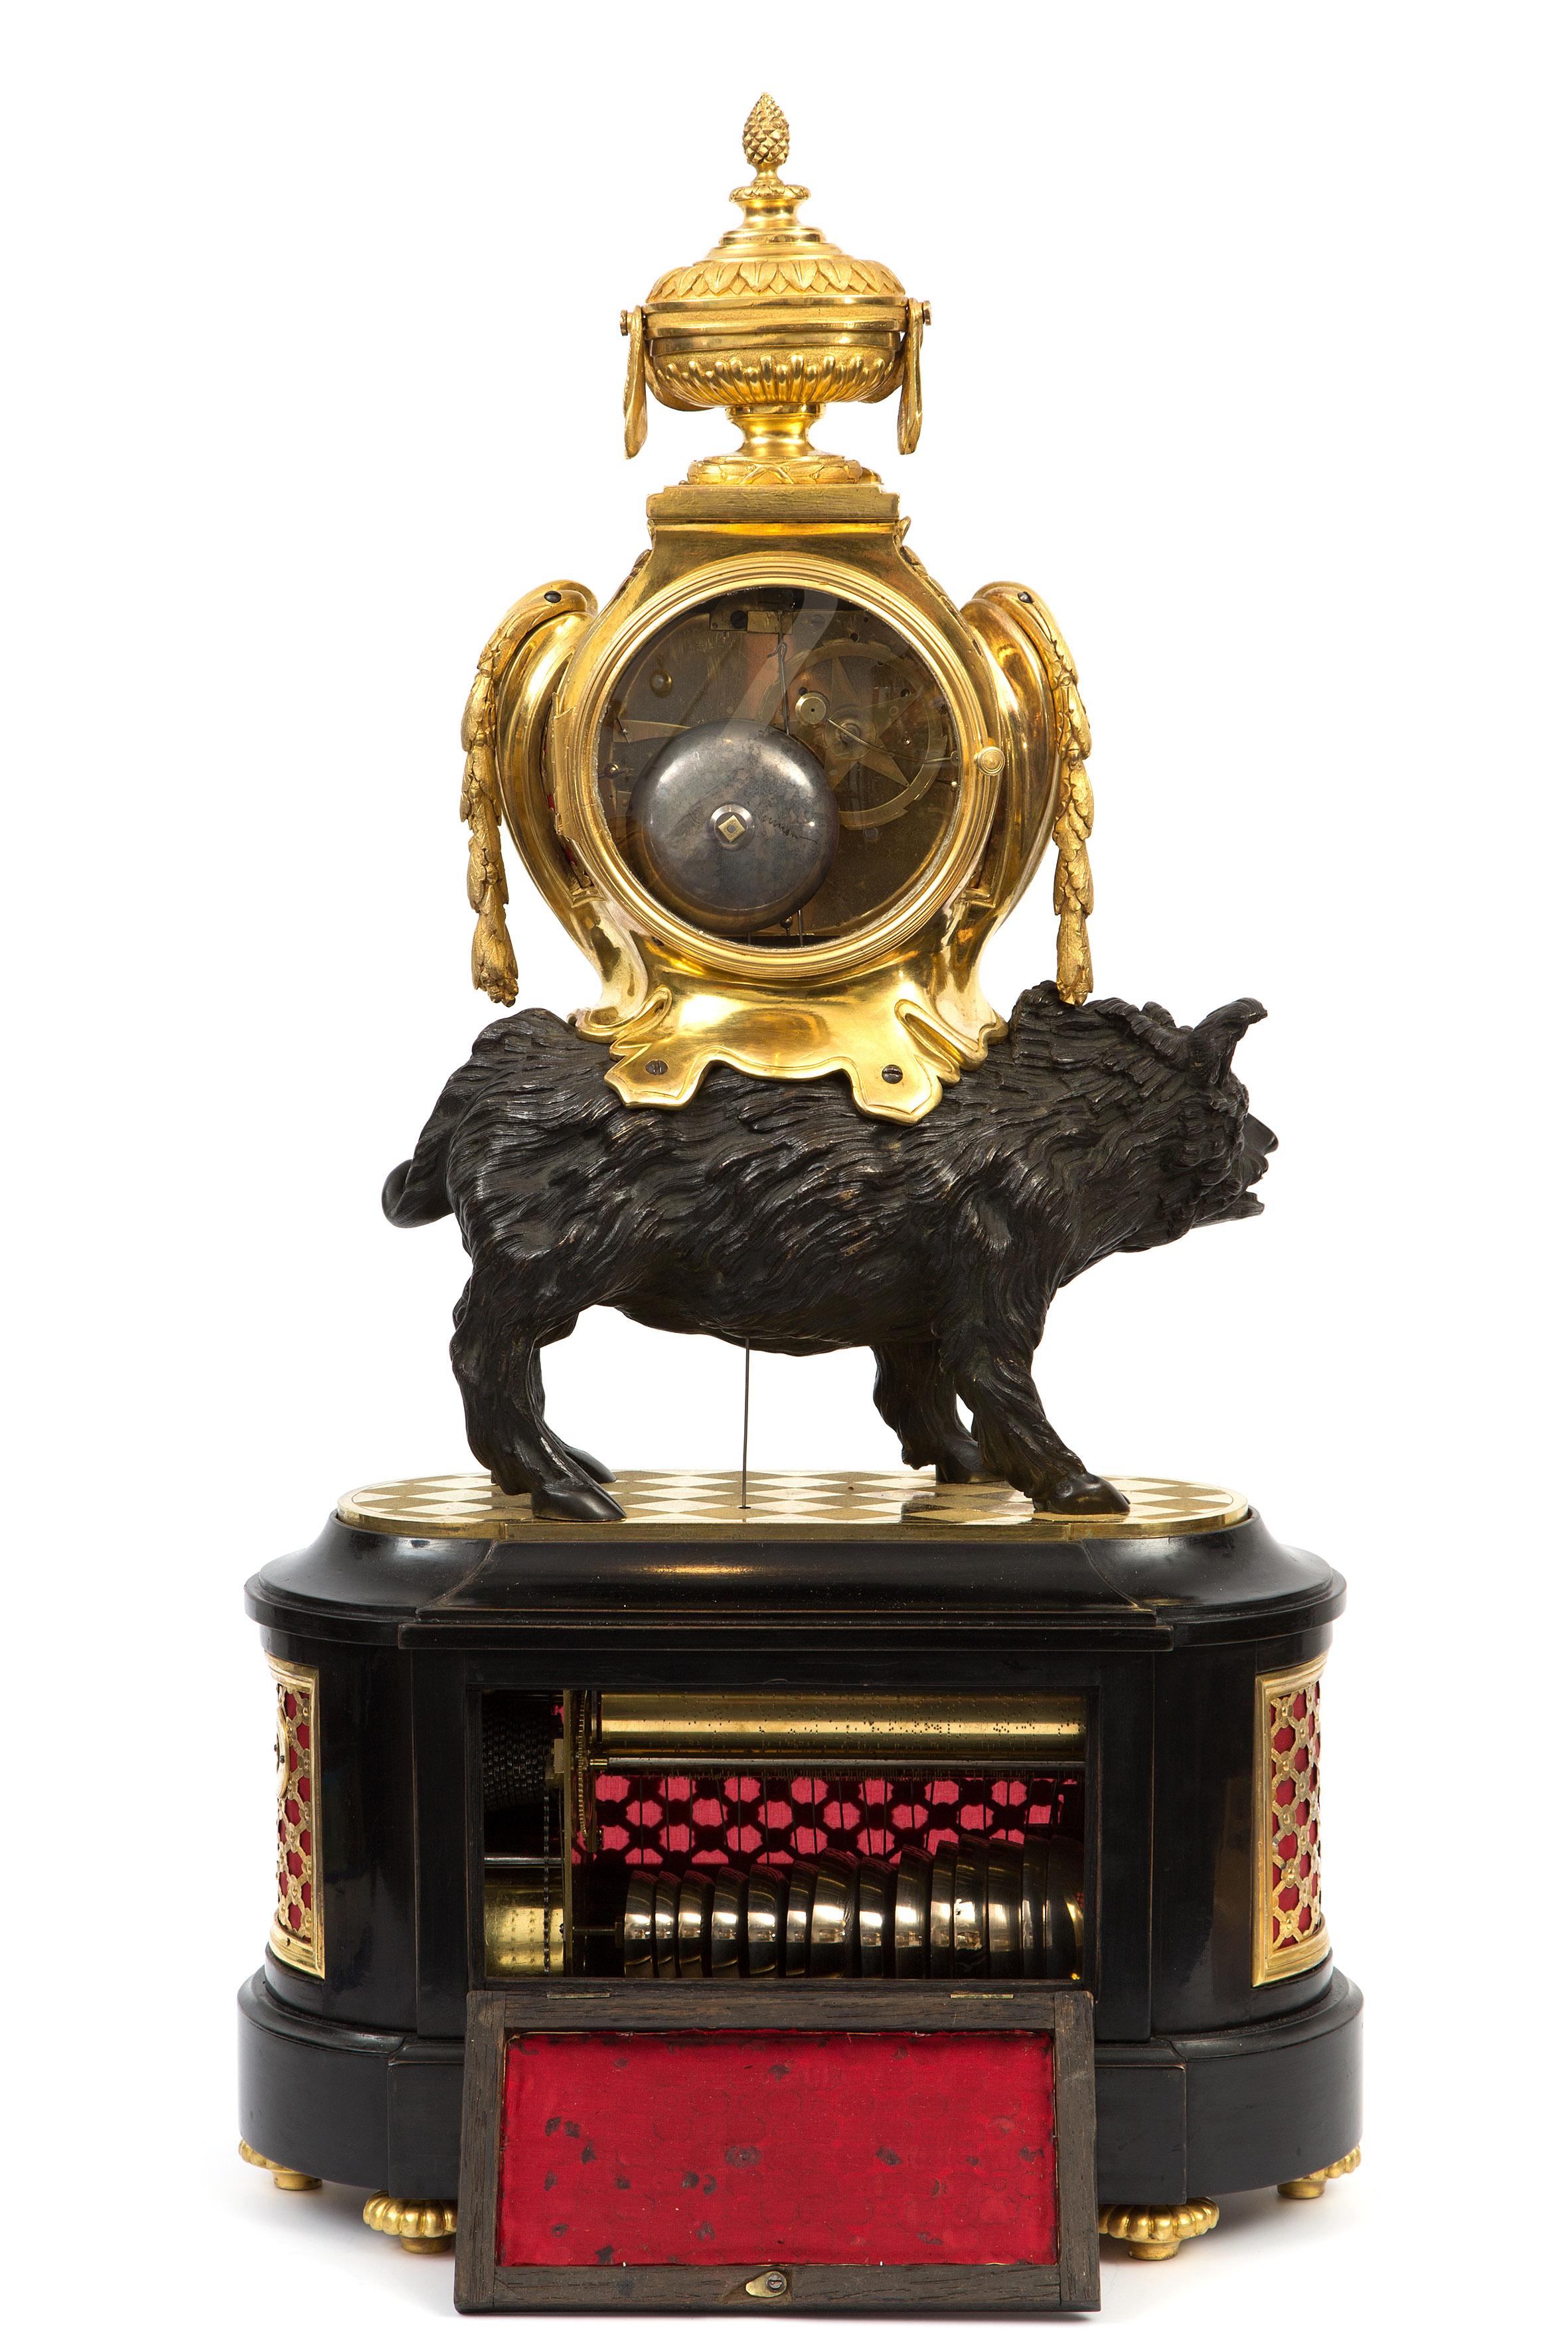 Rarissime et importante pendule au Sanglier en bronze de style Louis XV, avec sonnerie automatique demi-heure/heure et mouvement musical à 9 mélodies qui s'active à l'heure et peut également être activé manuellement.
Boîtier : bronze ormulu et